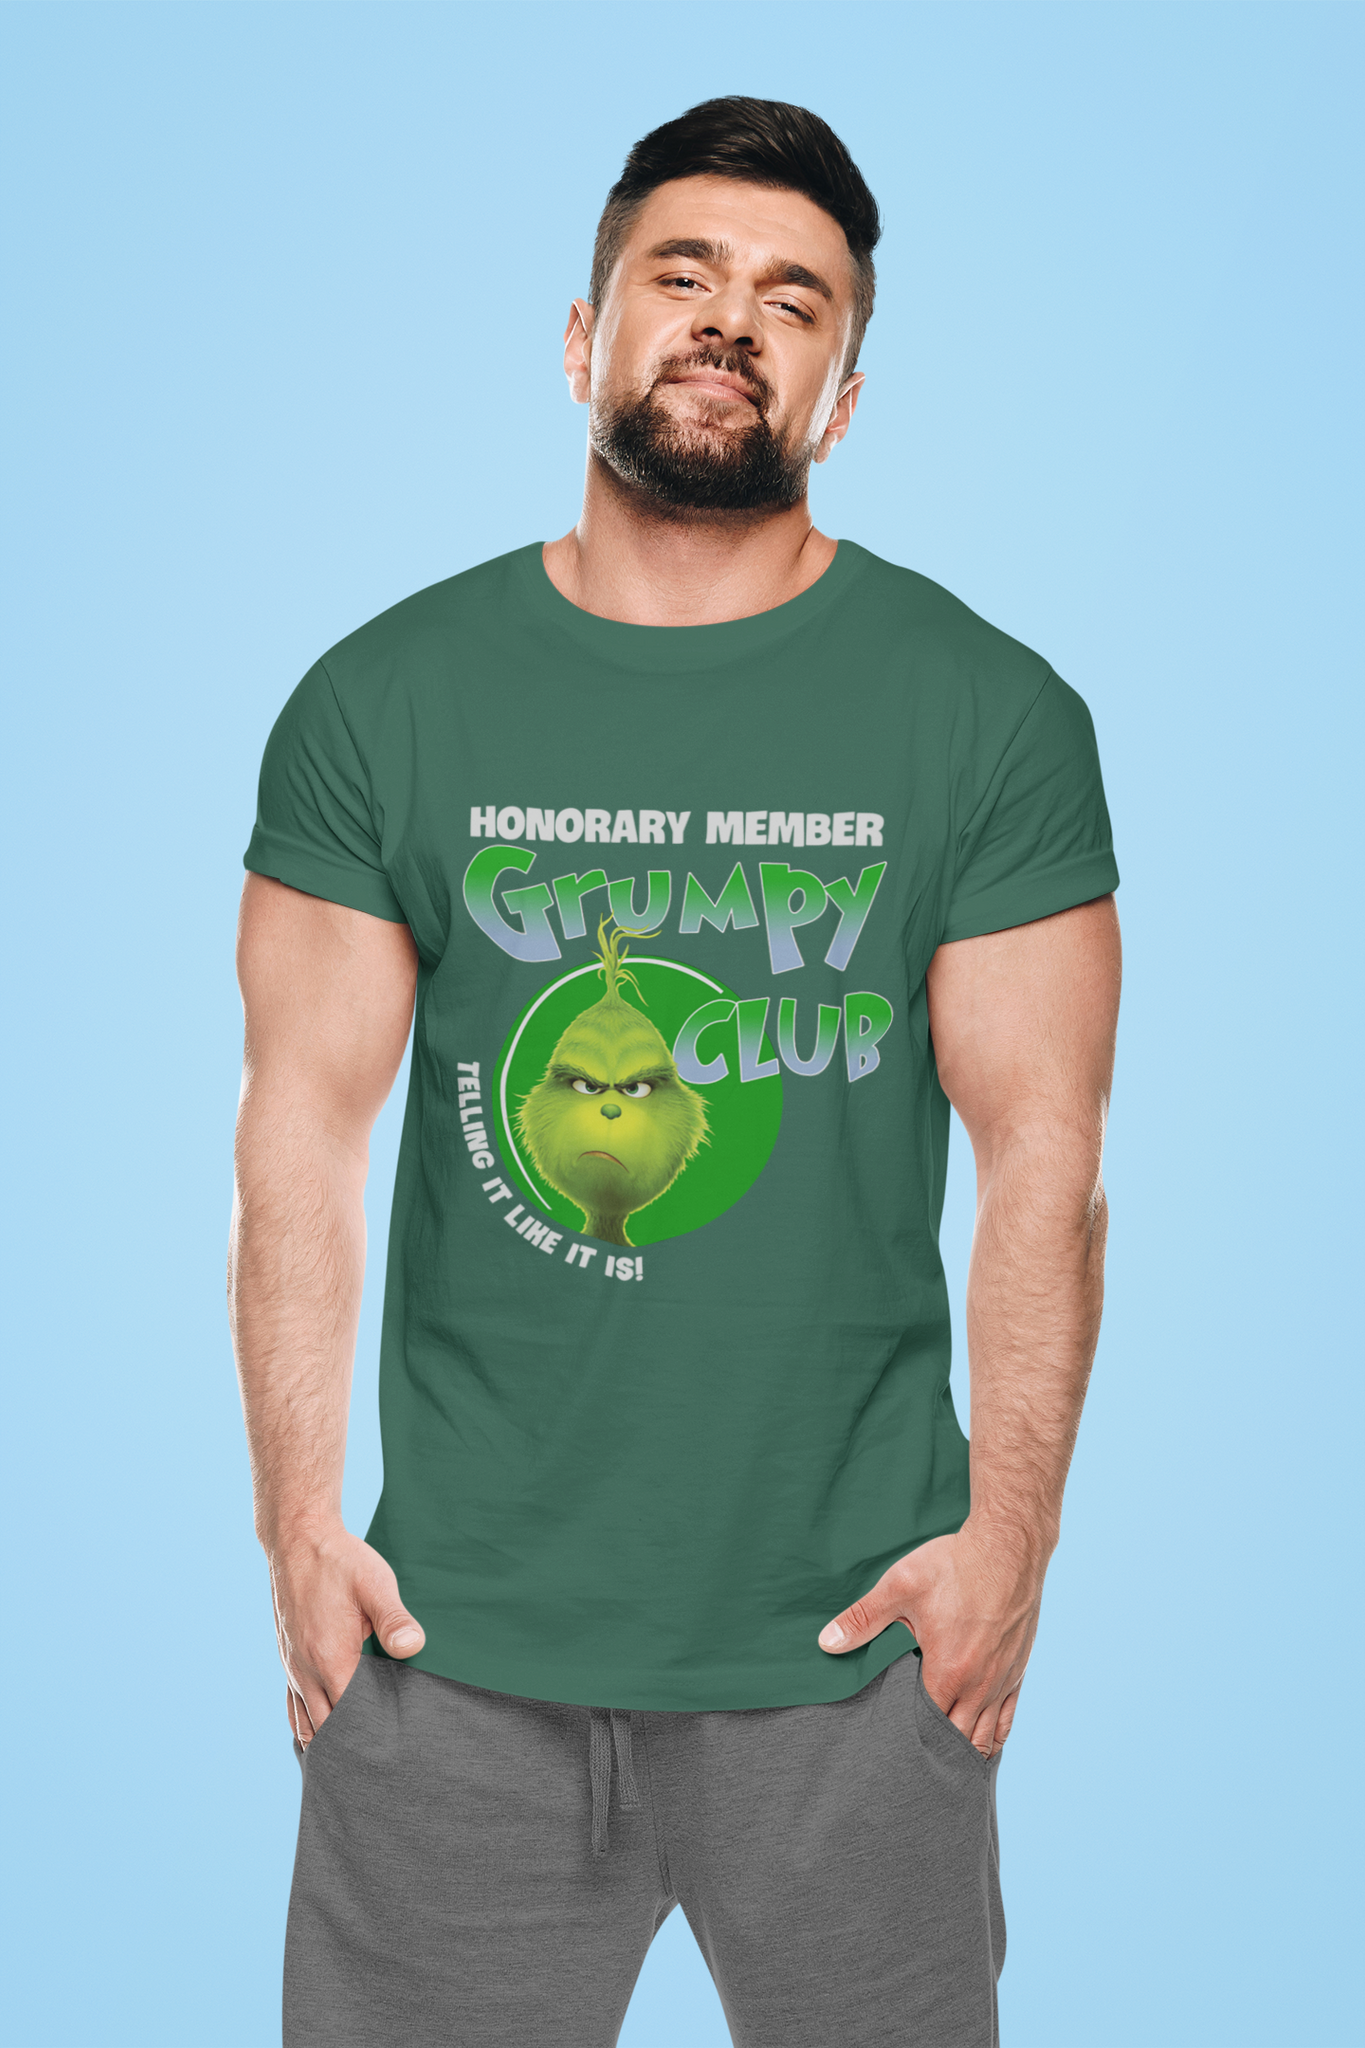 Grinch T Shirt, Honorary Member Grumpy Club Tshirt, Christmas Gifts